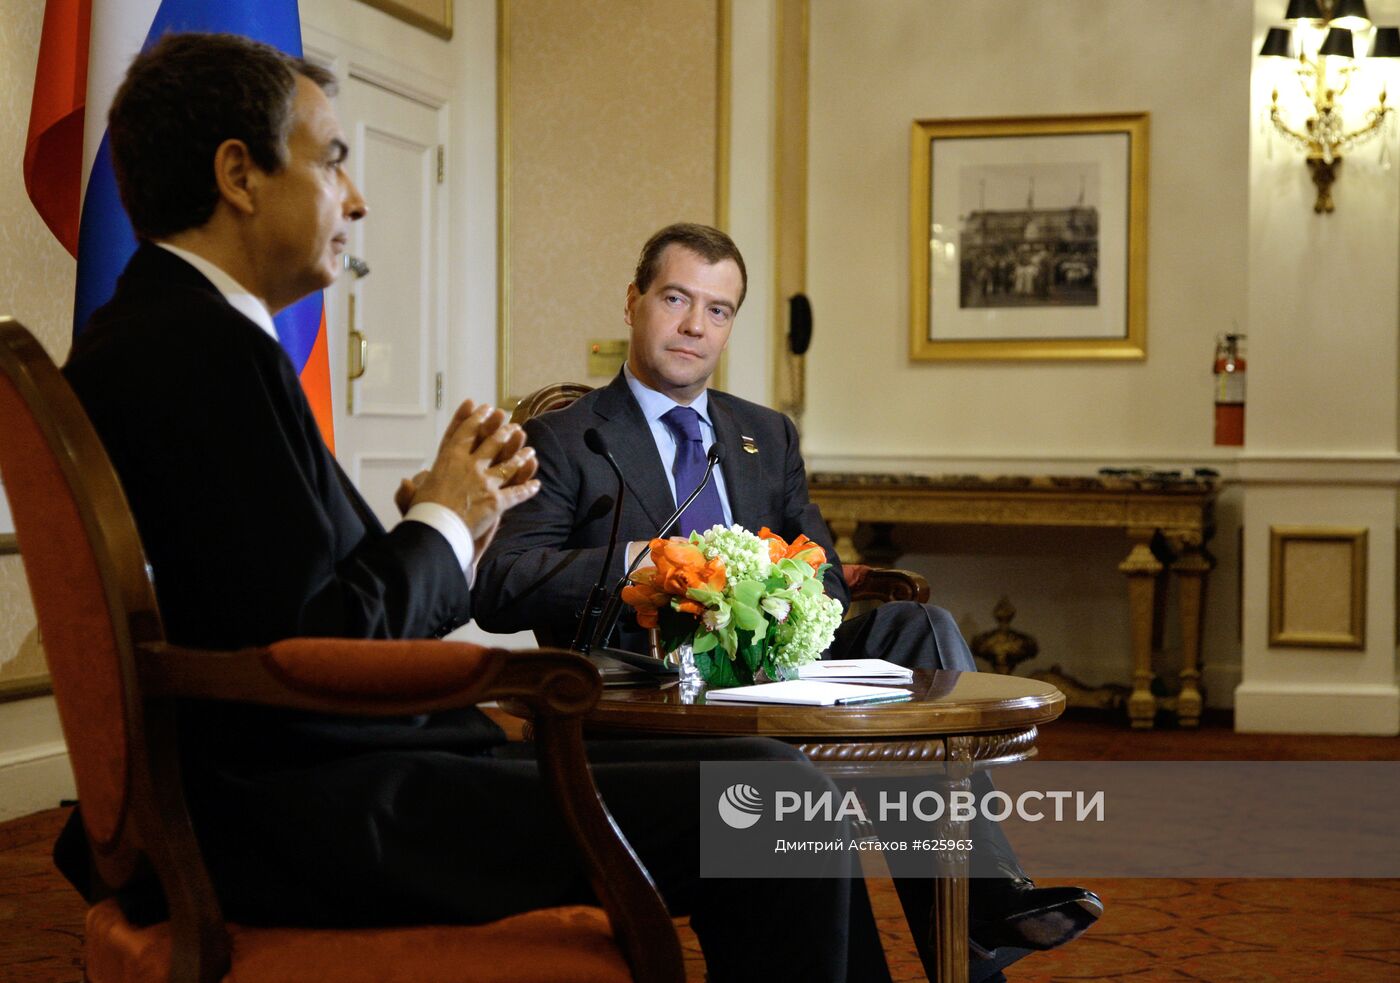 Встреча Дмитрия Медведева и Хосе Луиса Родригеса Сапатеро